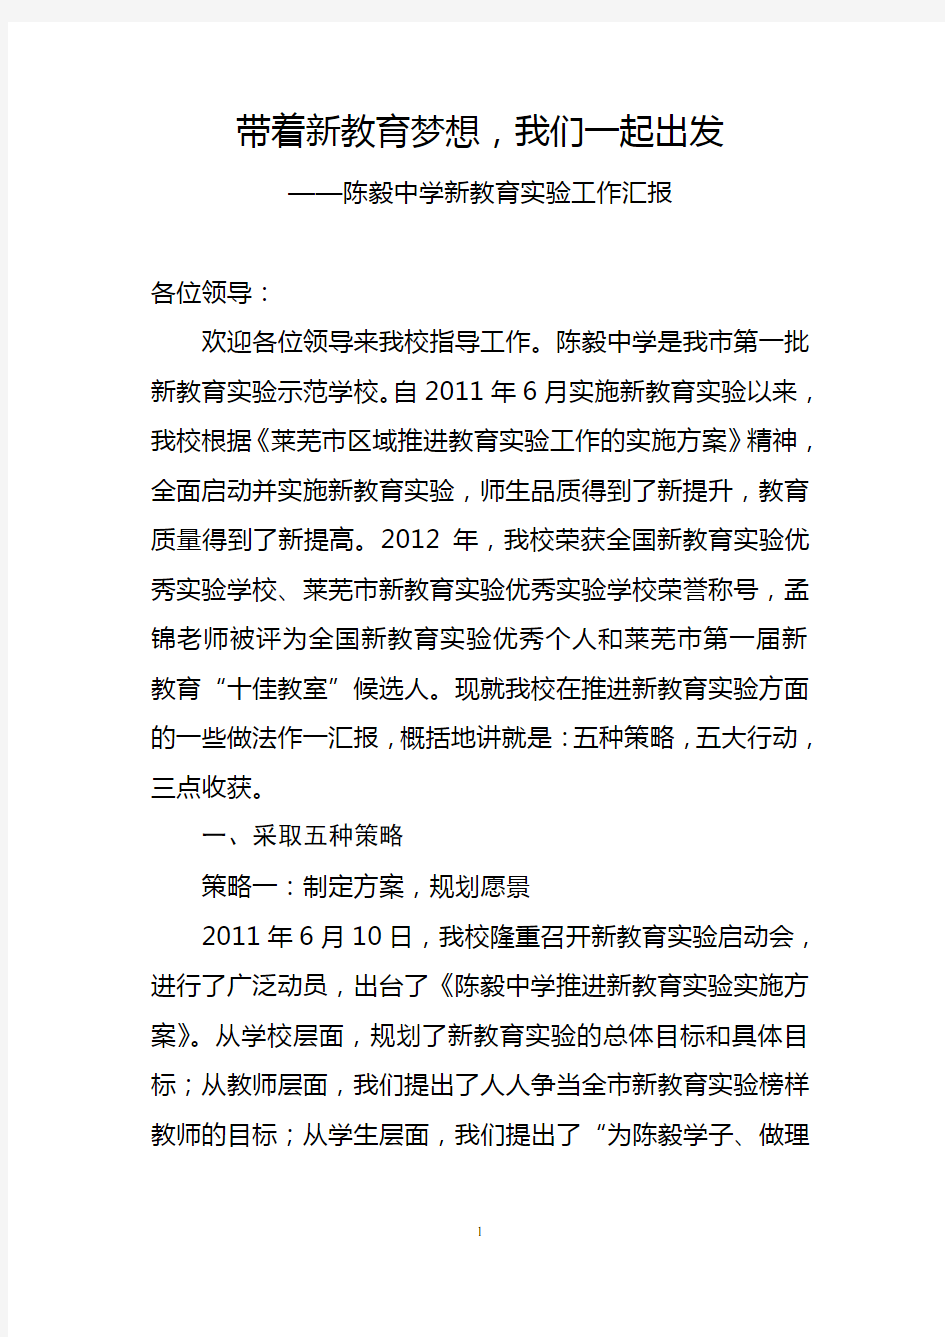 陈毅中学：新教育实验工作汇报材料2013.11.18